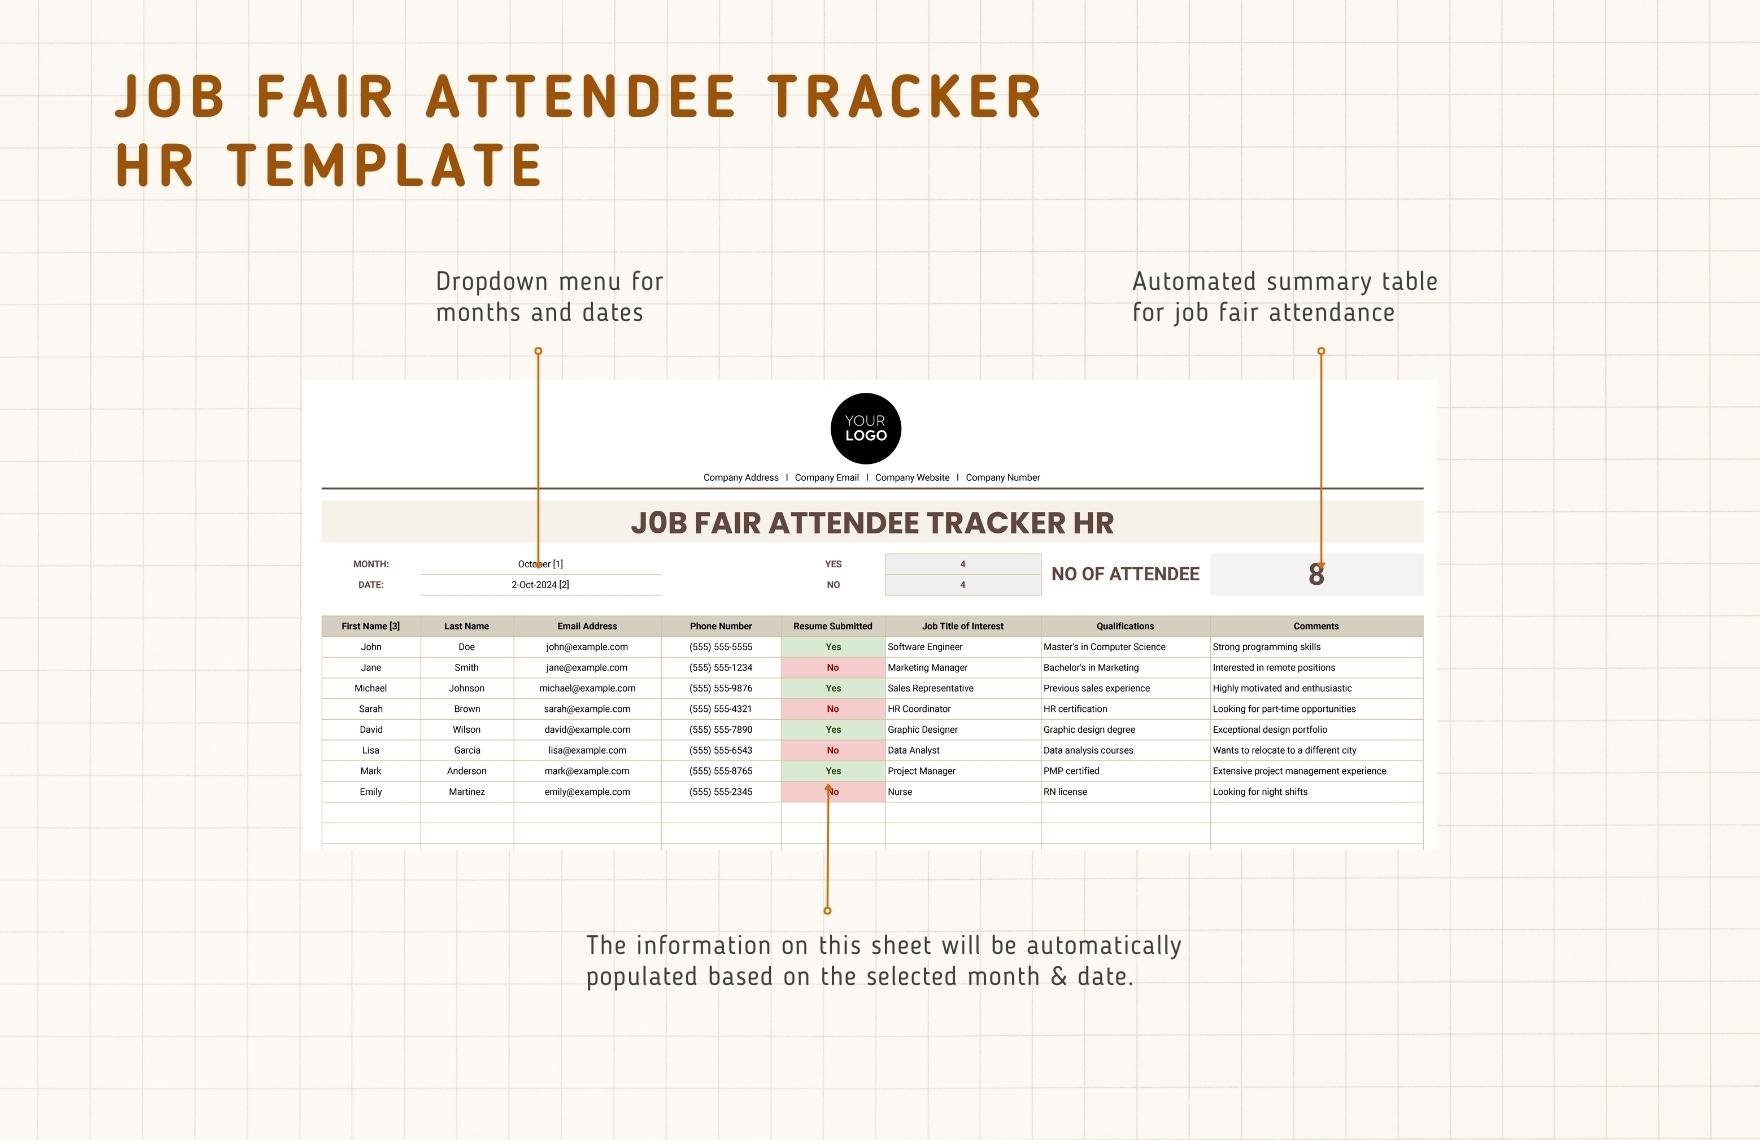 Job Fair Attendee Tracker HR Template